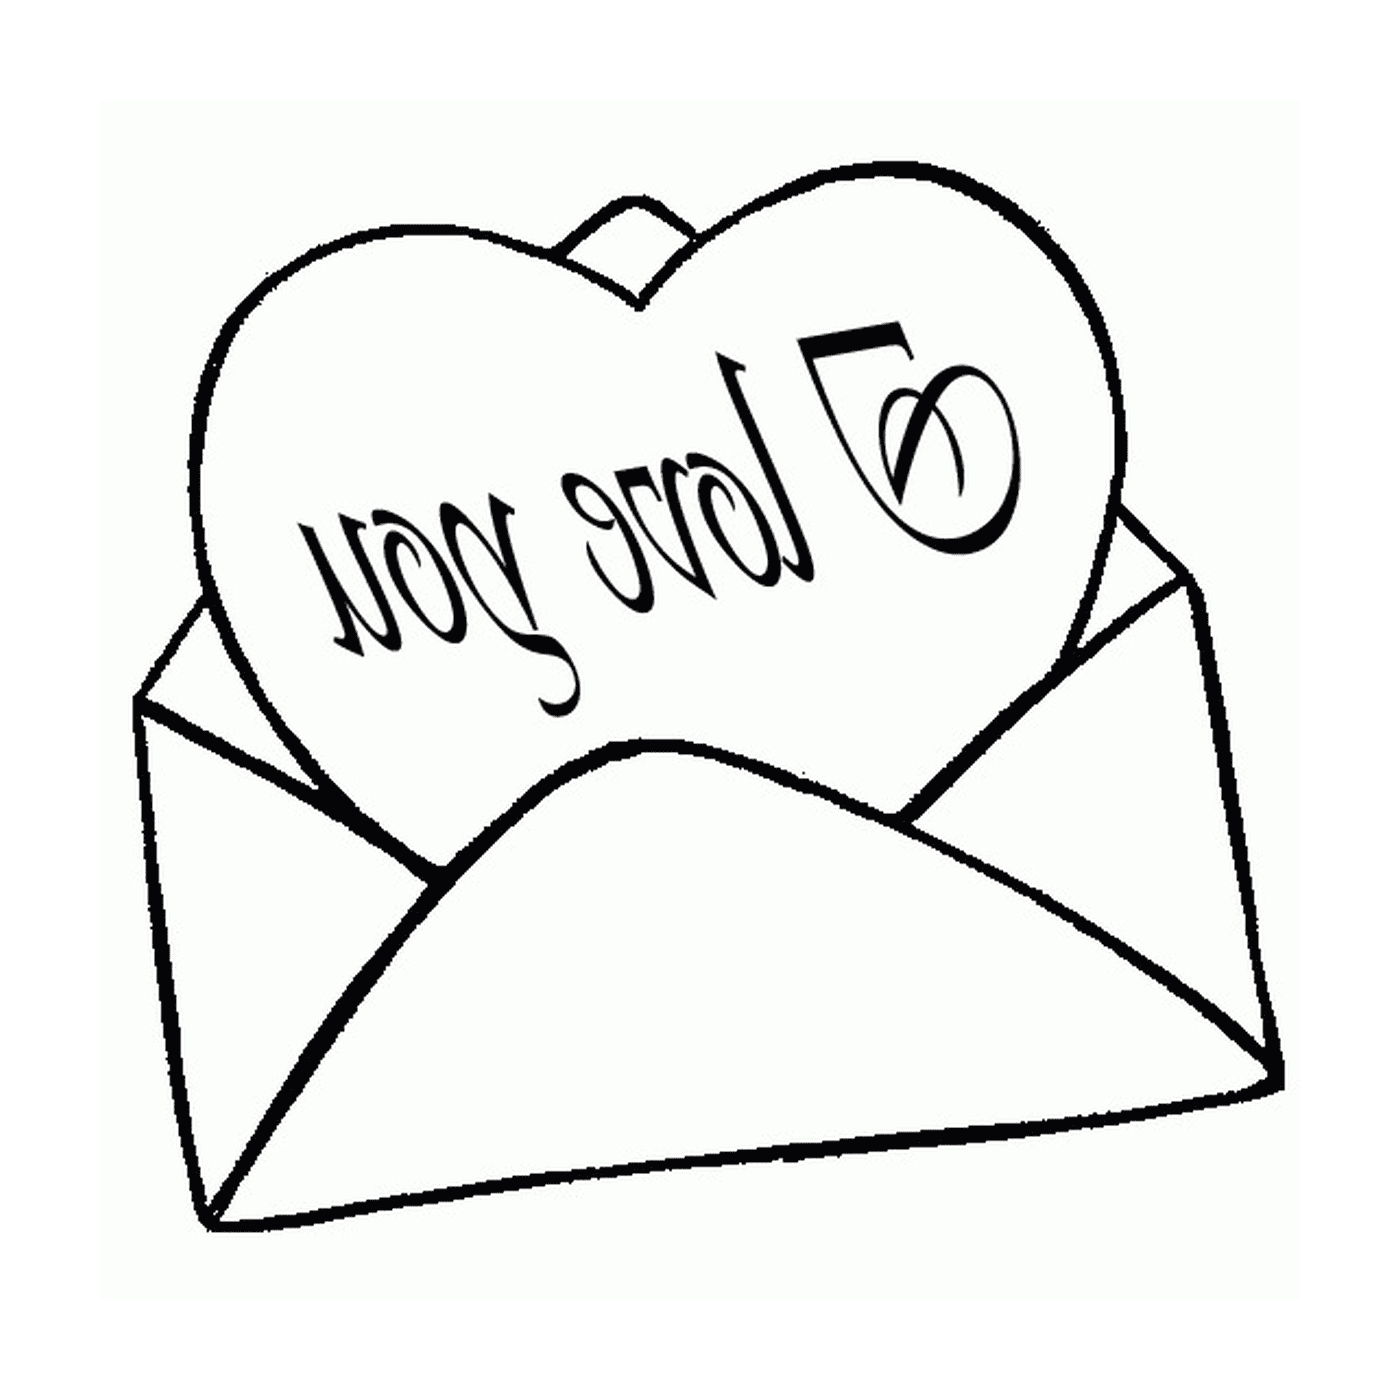   Une enveloppe ouverte avec un cœur dessus 